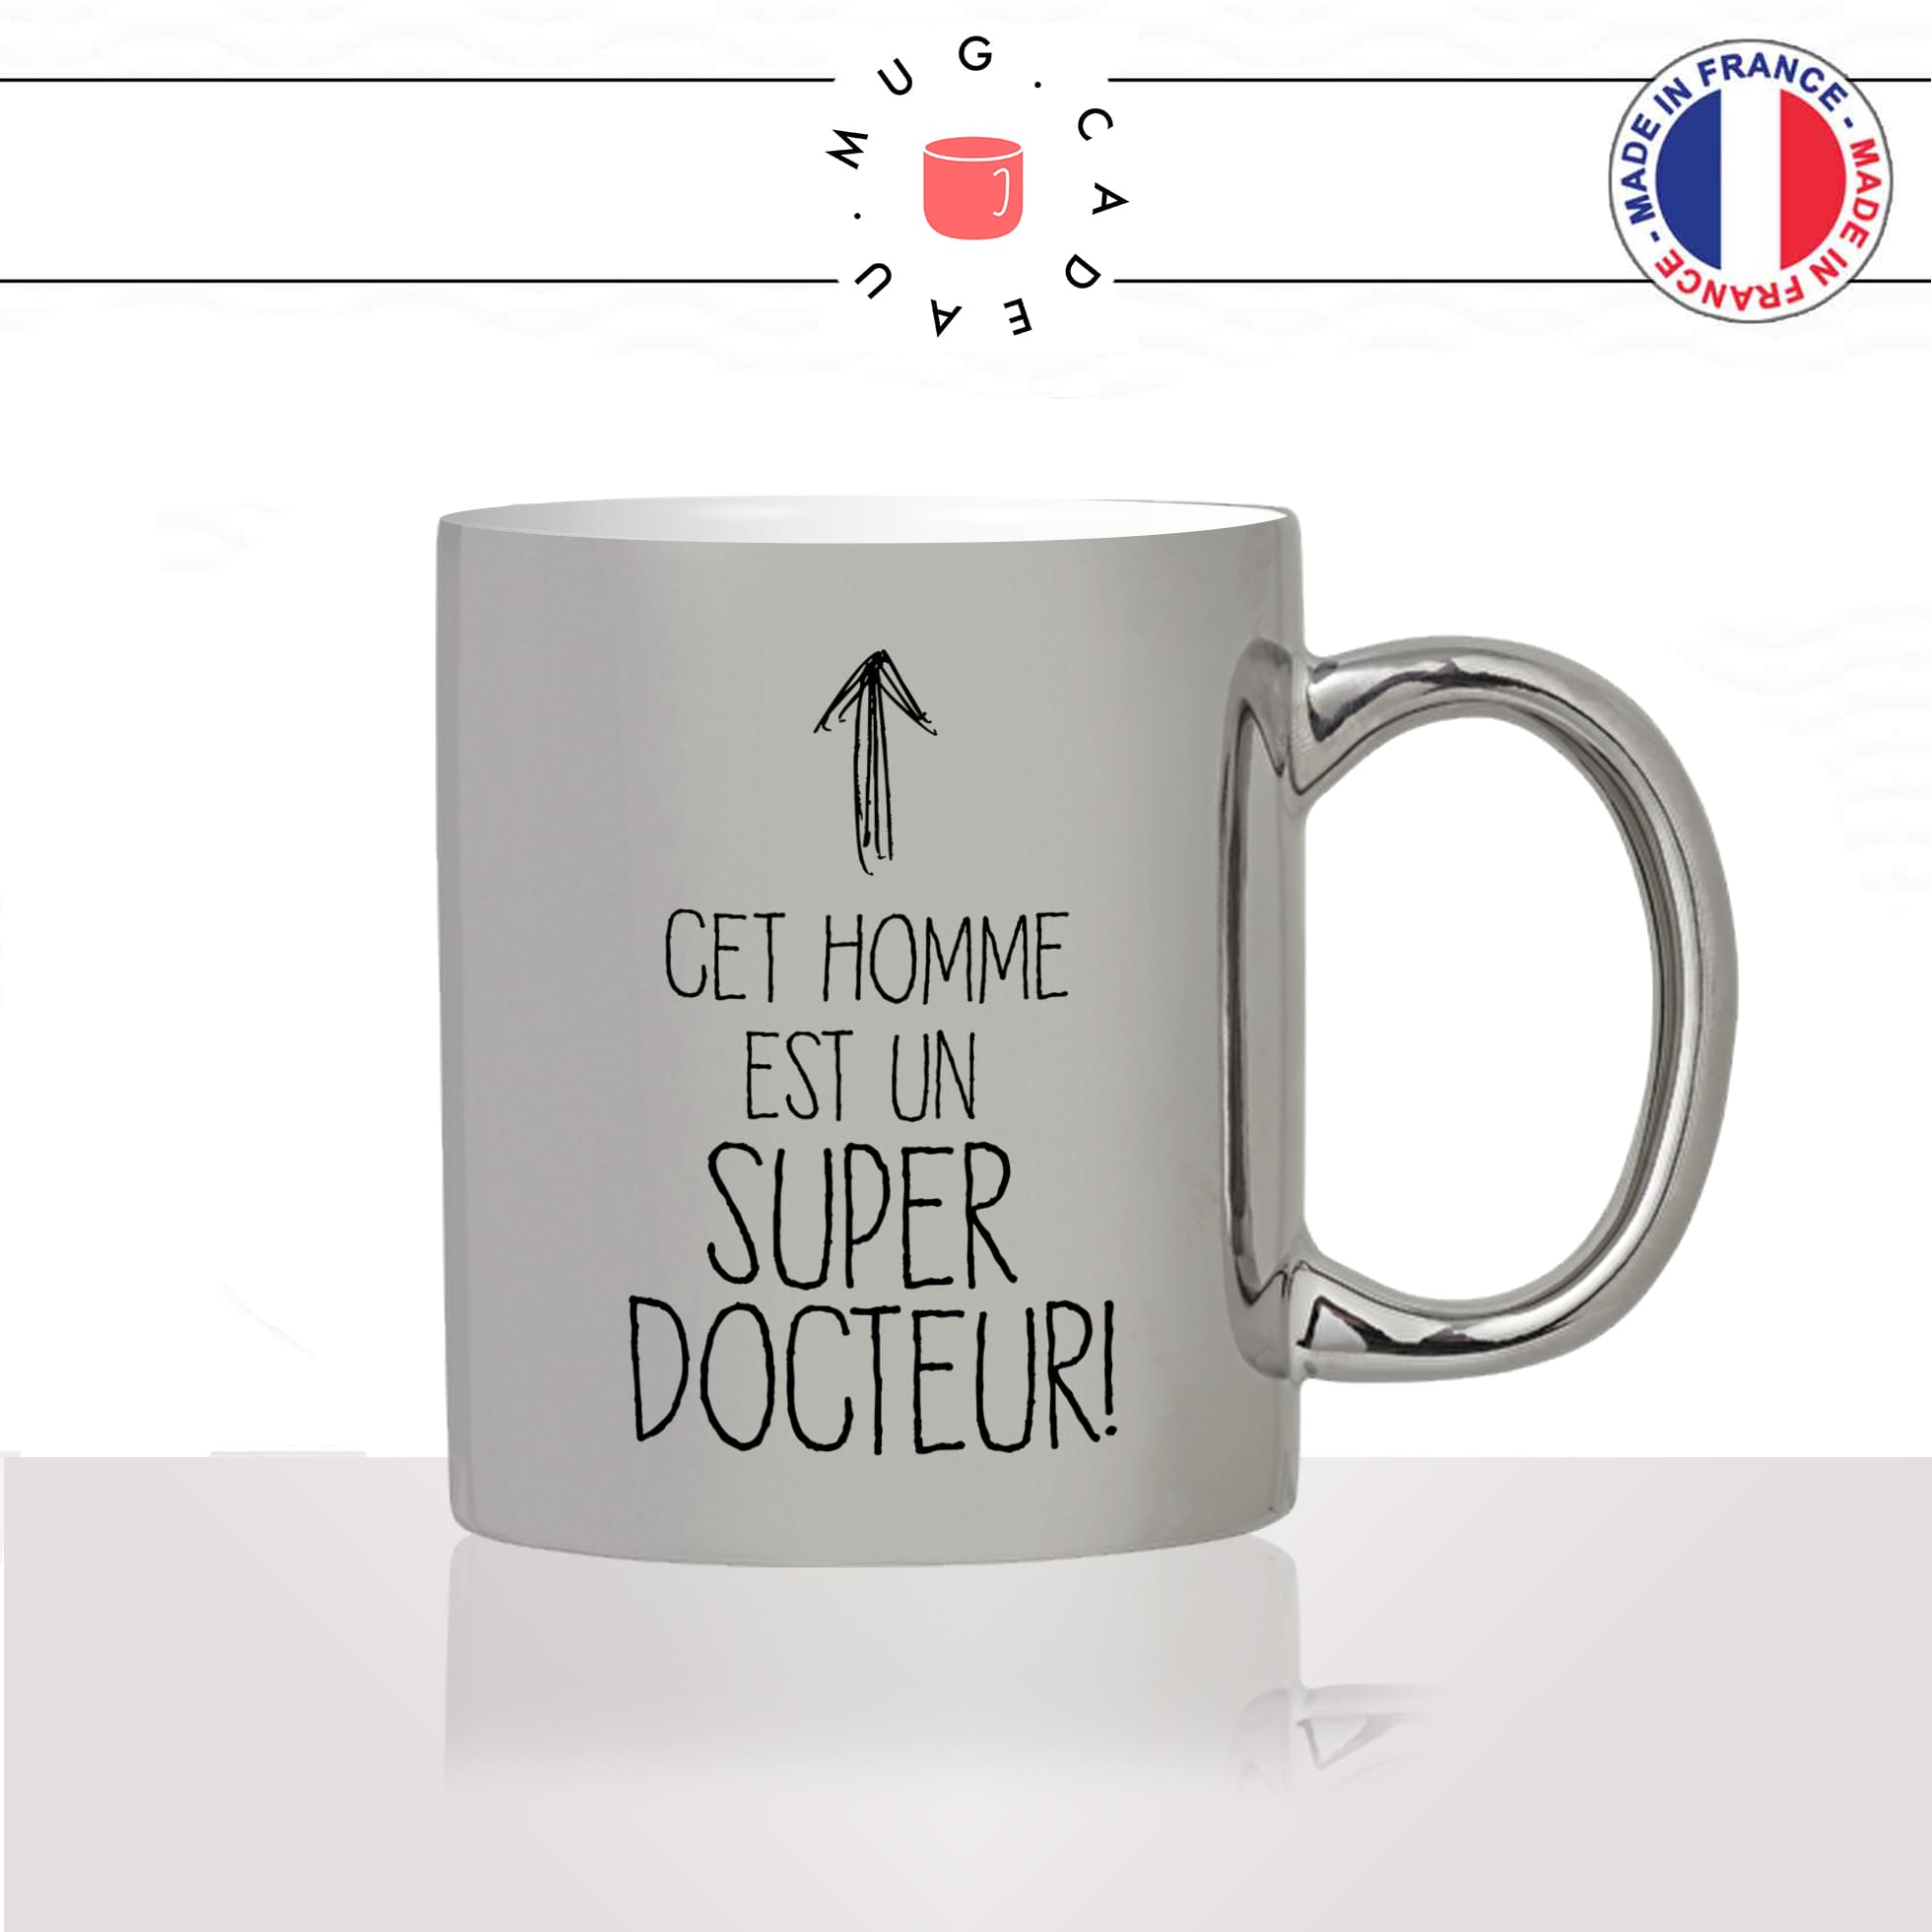 mug-tasse-argenté-silver-cet-homme-est-un-super-docteur-medecin-cabinet-medical-métier-fun-cool-café-thé-idée-cadeau-original2